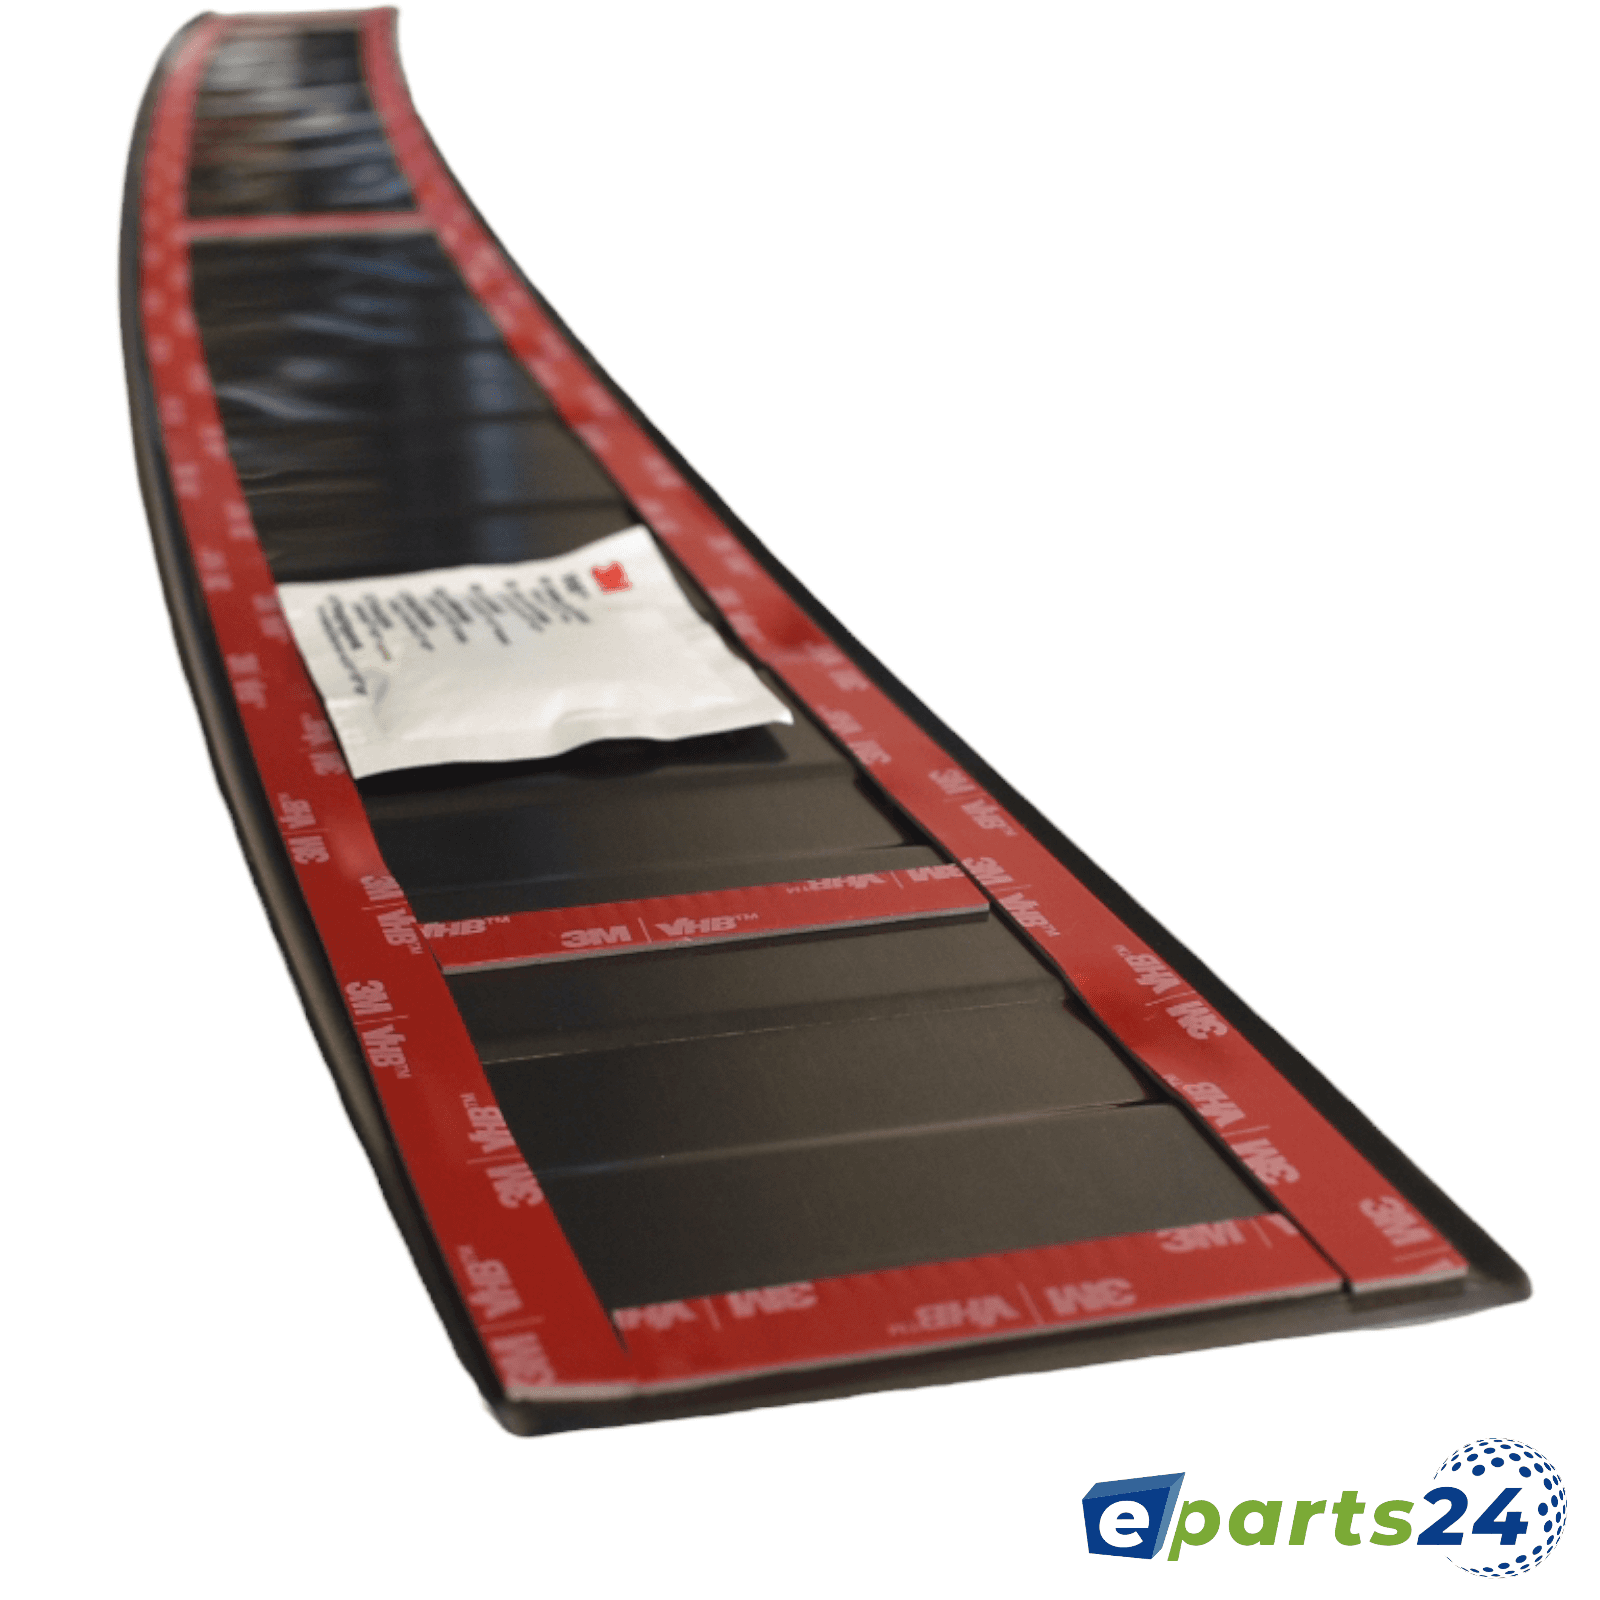 Ladekantenschutz Heckschutz für pul E-Parts24 Seat schwarz Tarraco matt 2018- ab –